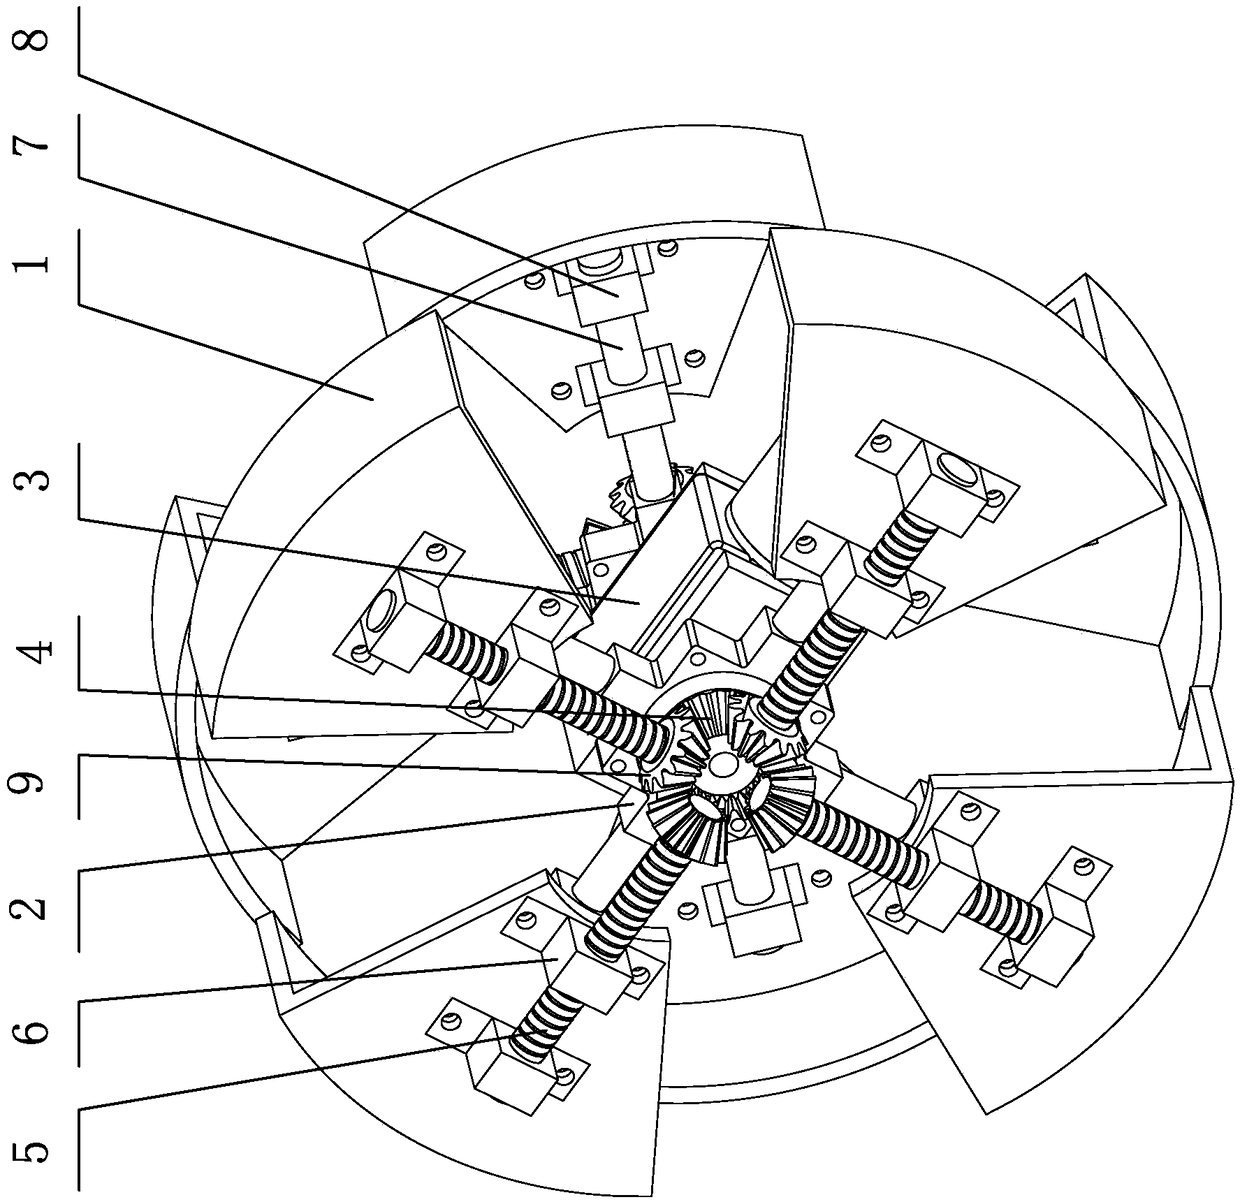 Wheel mechanism with adjustable radius